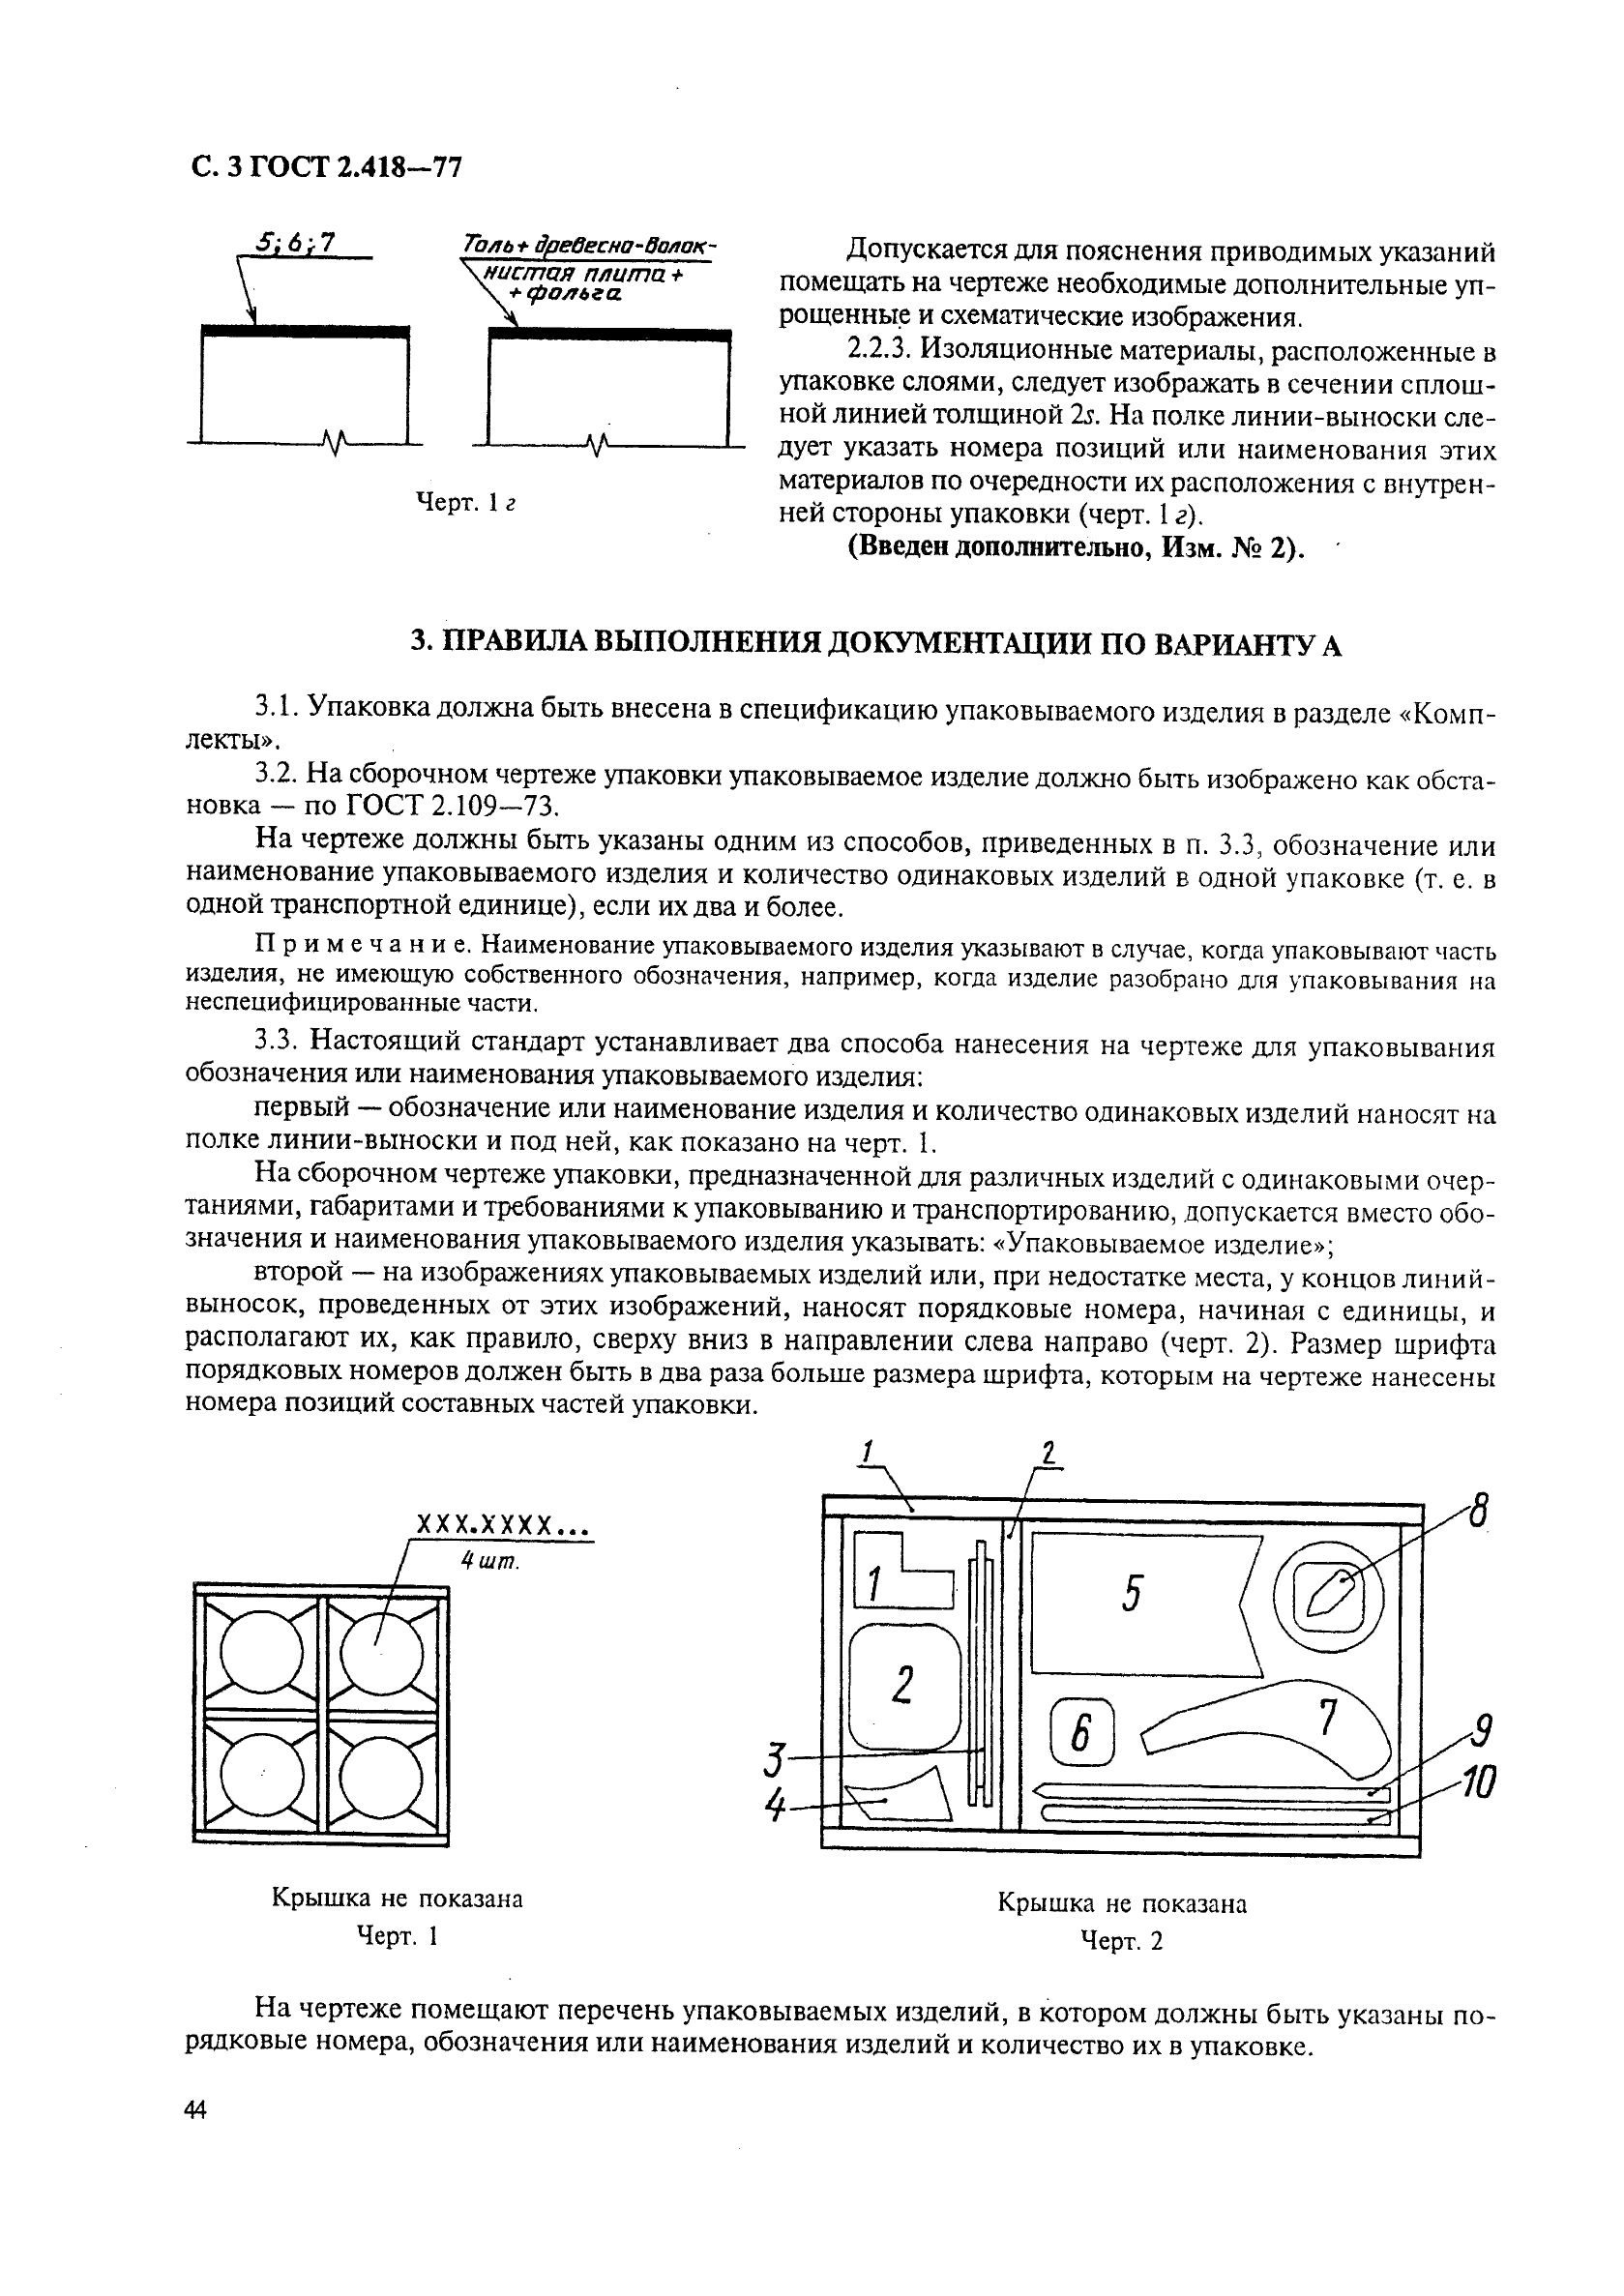 ГОСТ 2.418-77 Единая система конструкторской документации. Правила выполнения конструкторской документации упаковки (фото 3 из 5)